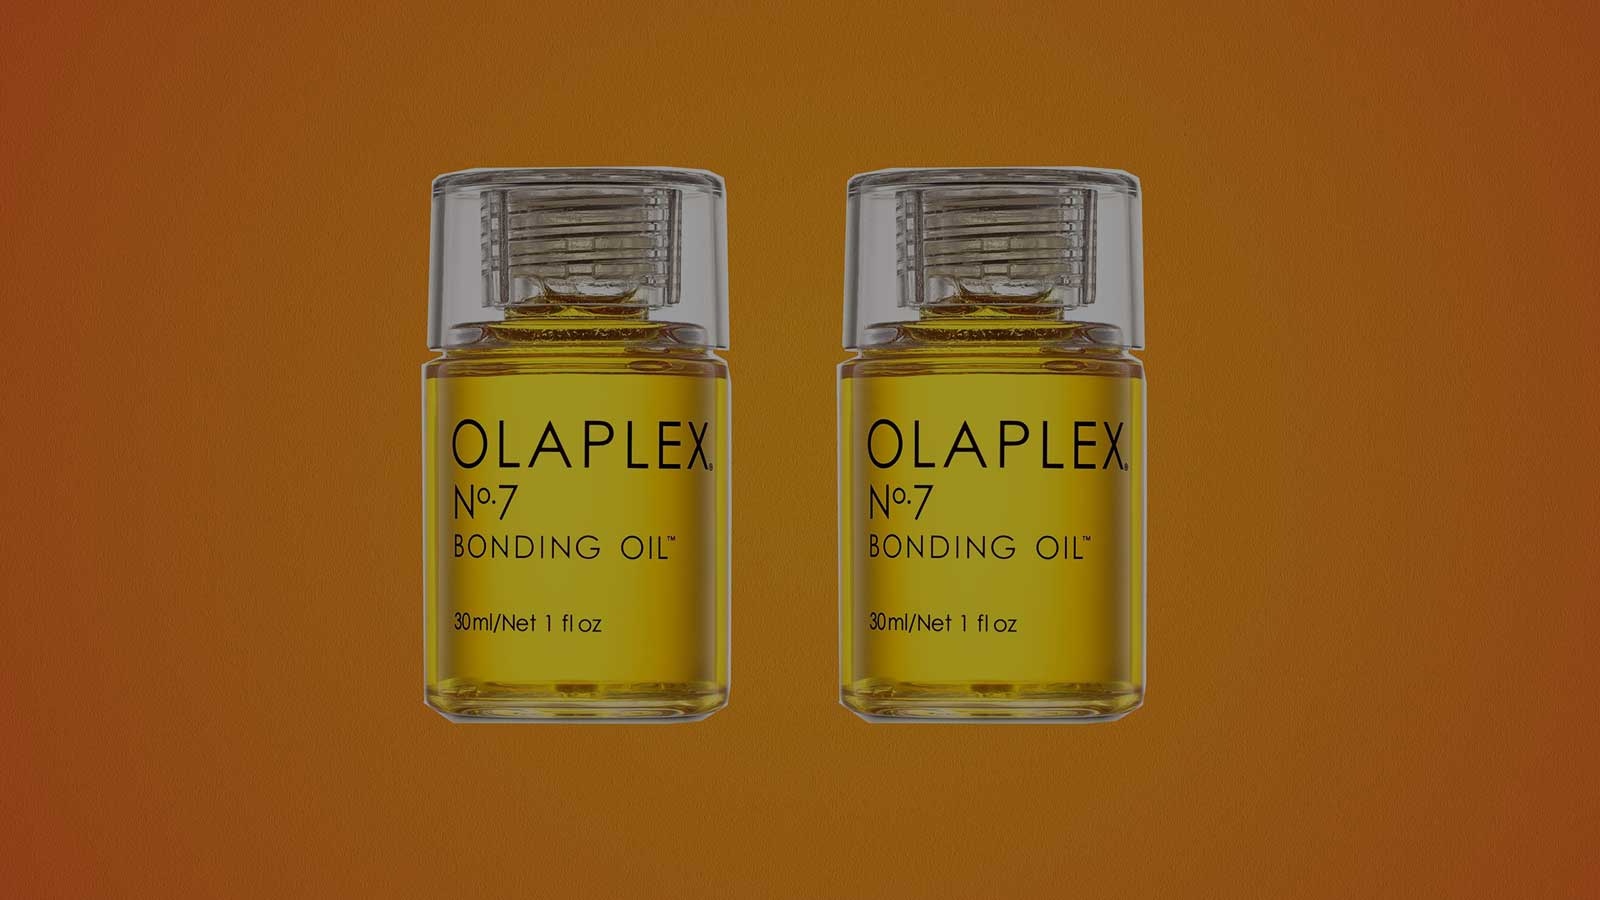 Olaplex cho ra mắt dầu dưỡng tóc đầu tiên: Olaplex số 7